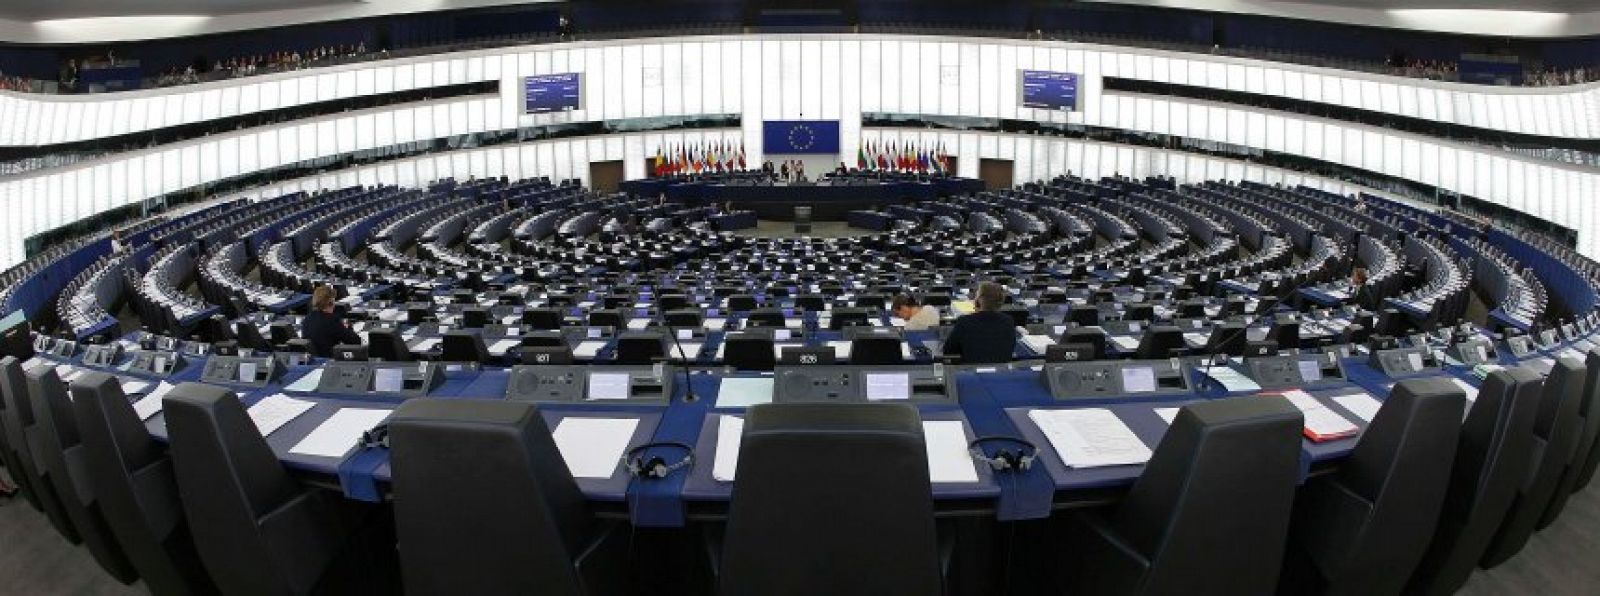 Imagen de un pleno del Parlamento Europeo en Estrasburgo.